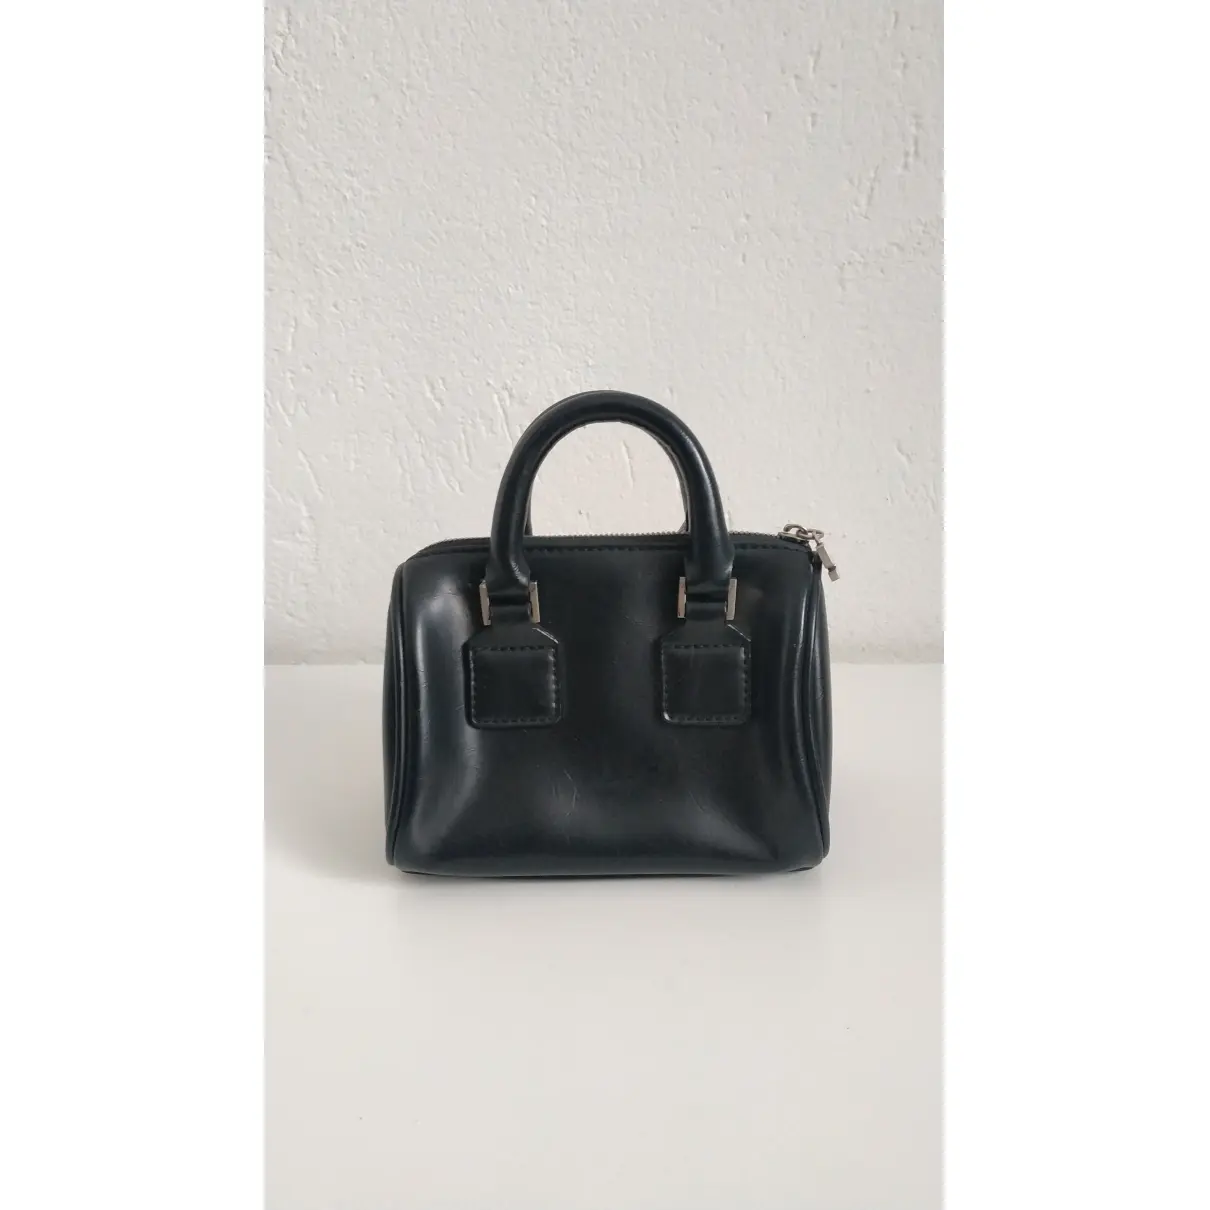 Buy SISLEY Leather handbag online